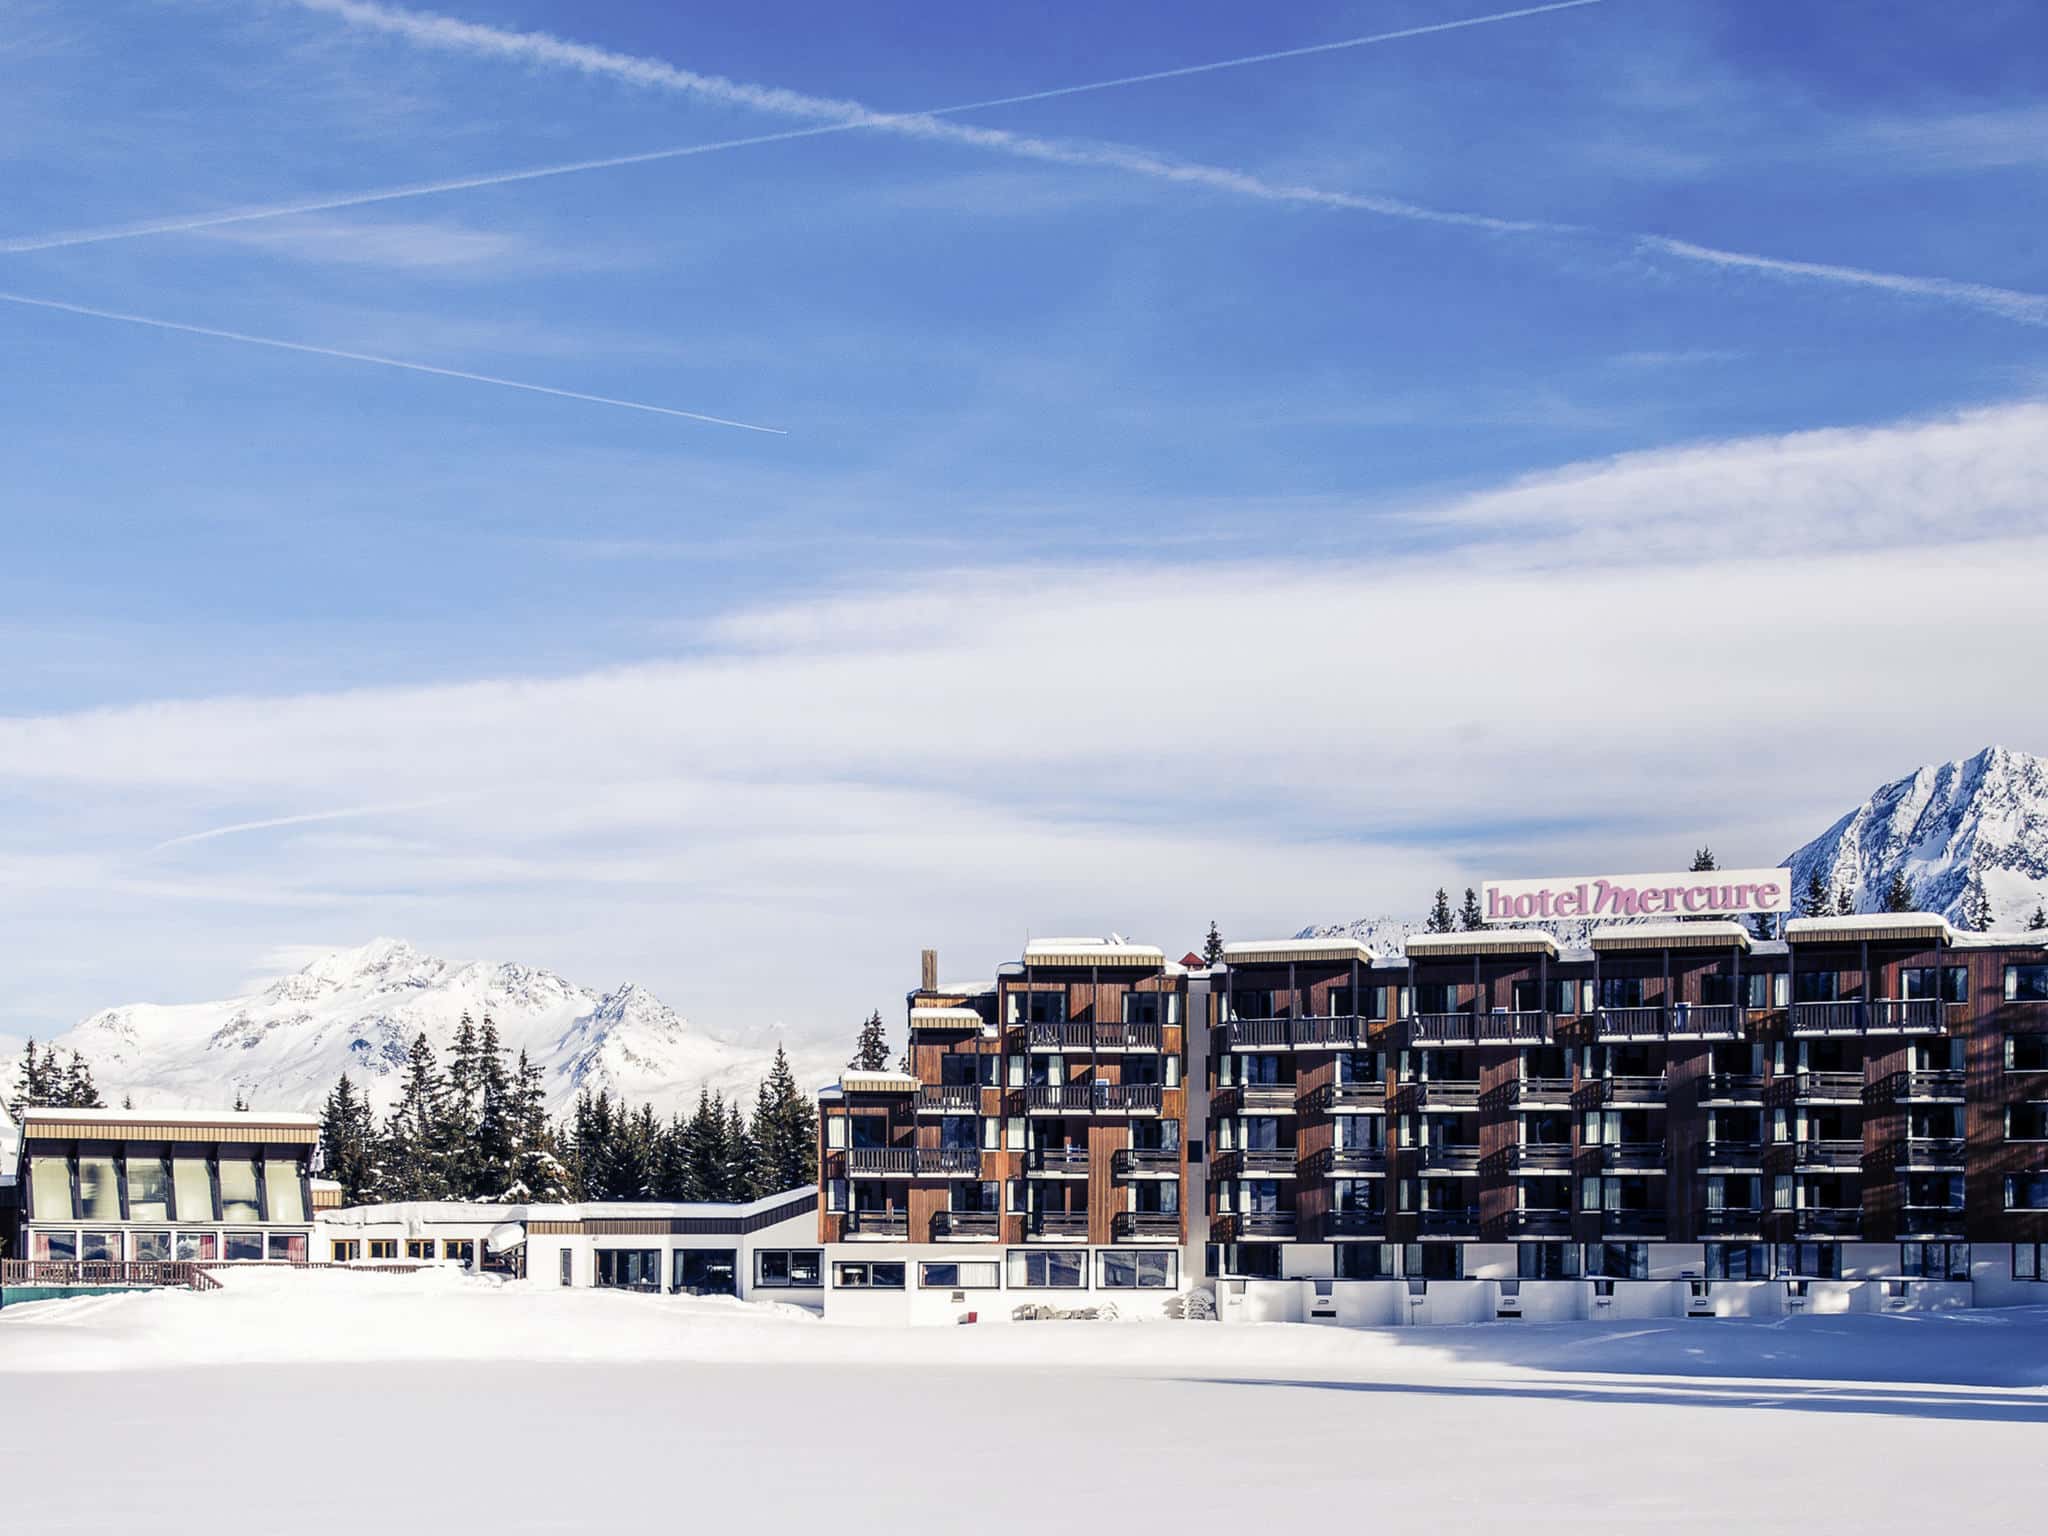 Découvrez pour de vos évènements professionnels en Savoie, l'Hôtel Mercure Courchevel. Equipé d'un d'auditorium, un espace de réception et 11 salles équipées pour vos évènements à 1900m d'altitude!